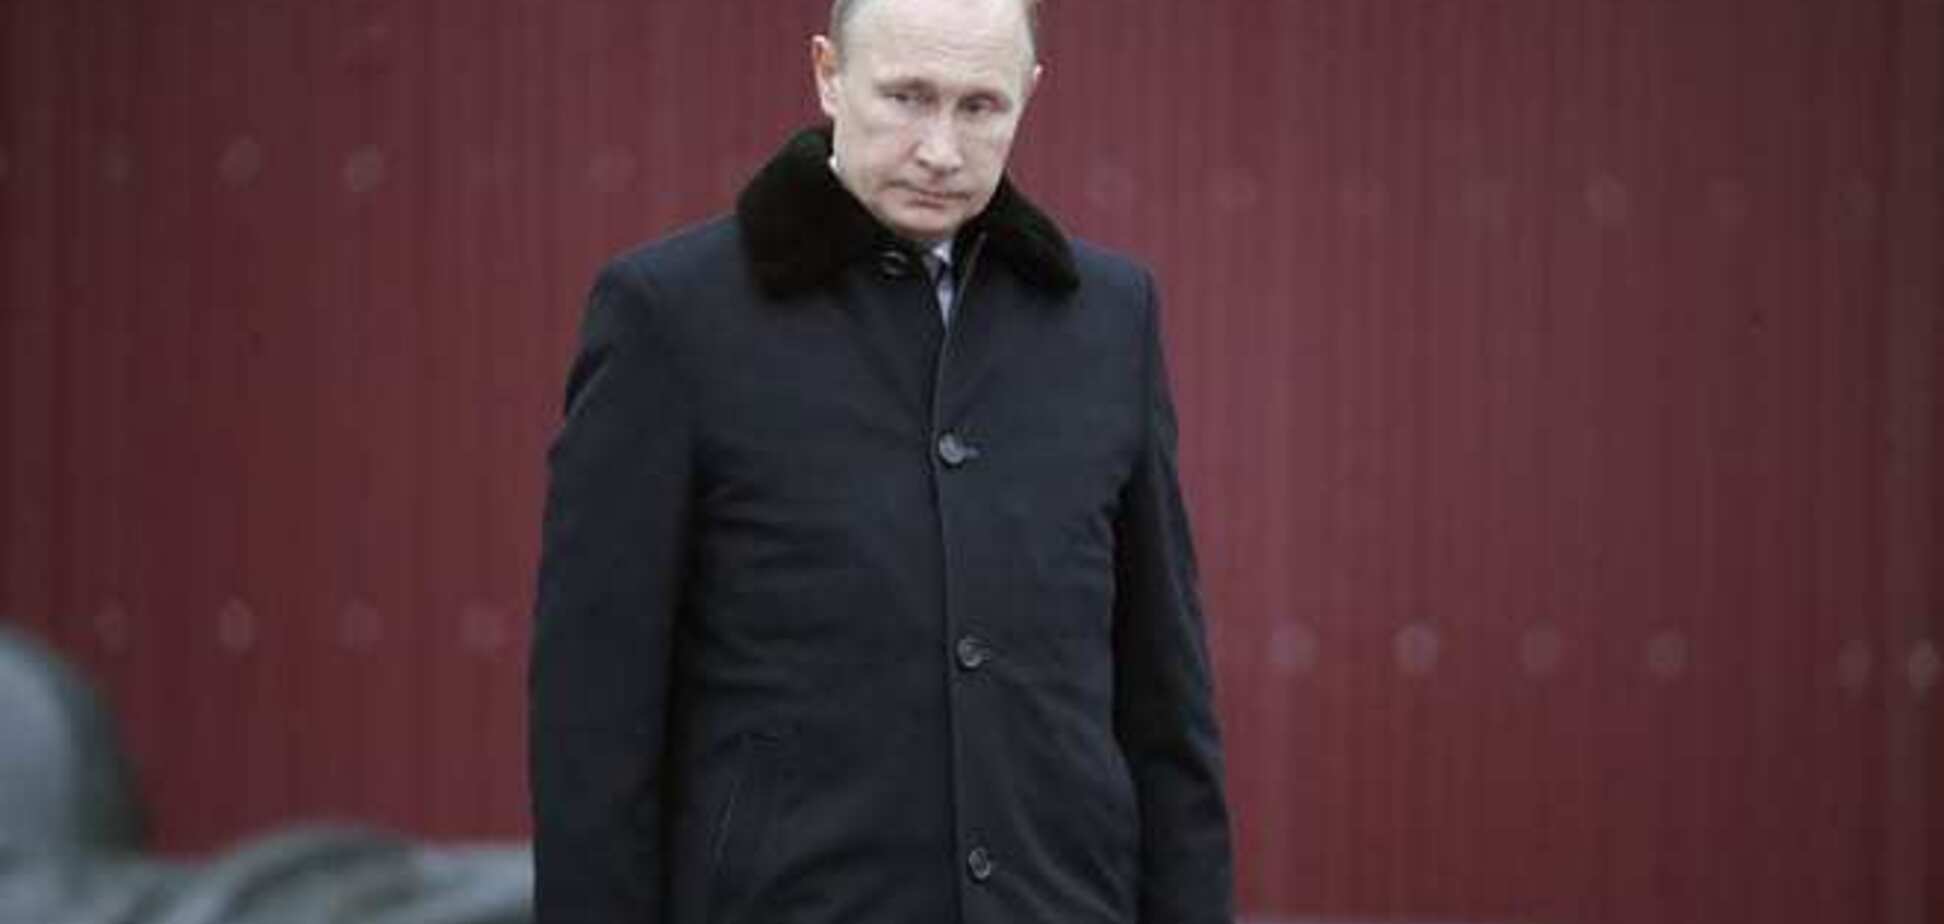 Портников: для многих россиян Путин - царь и бог, диалог с ними бессмыслен